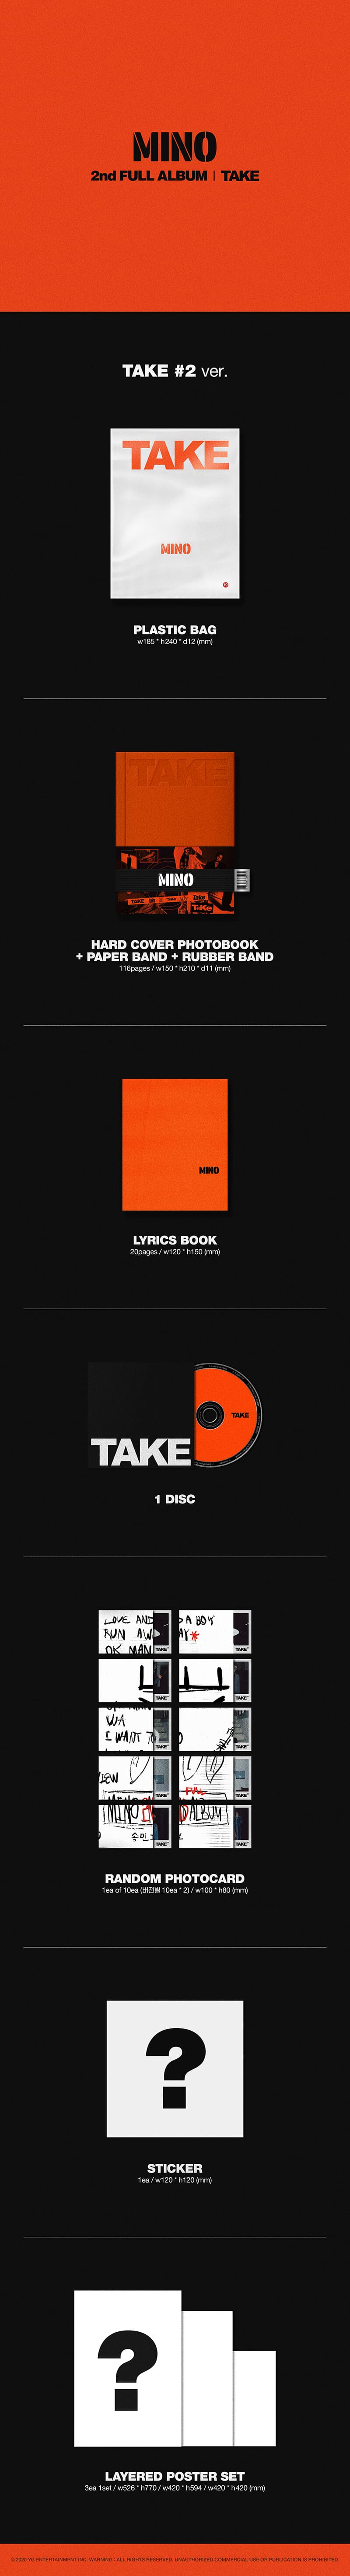 [미개봉] MINO (송민호) / MINO 2nd FULL ALBUM 'TAKE' (TAKE #1/TAKE #2 Ver. 랜덤 발송)